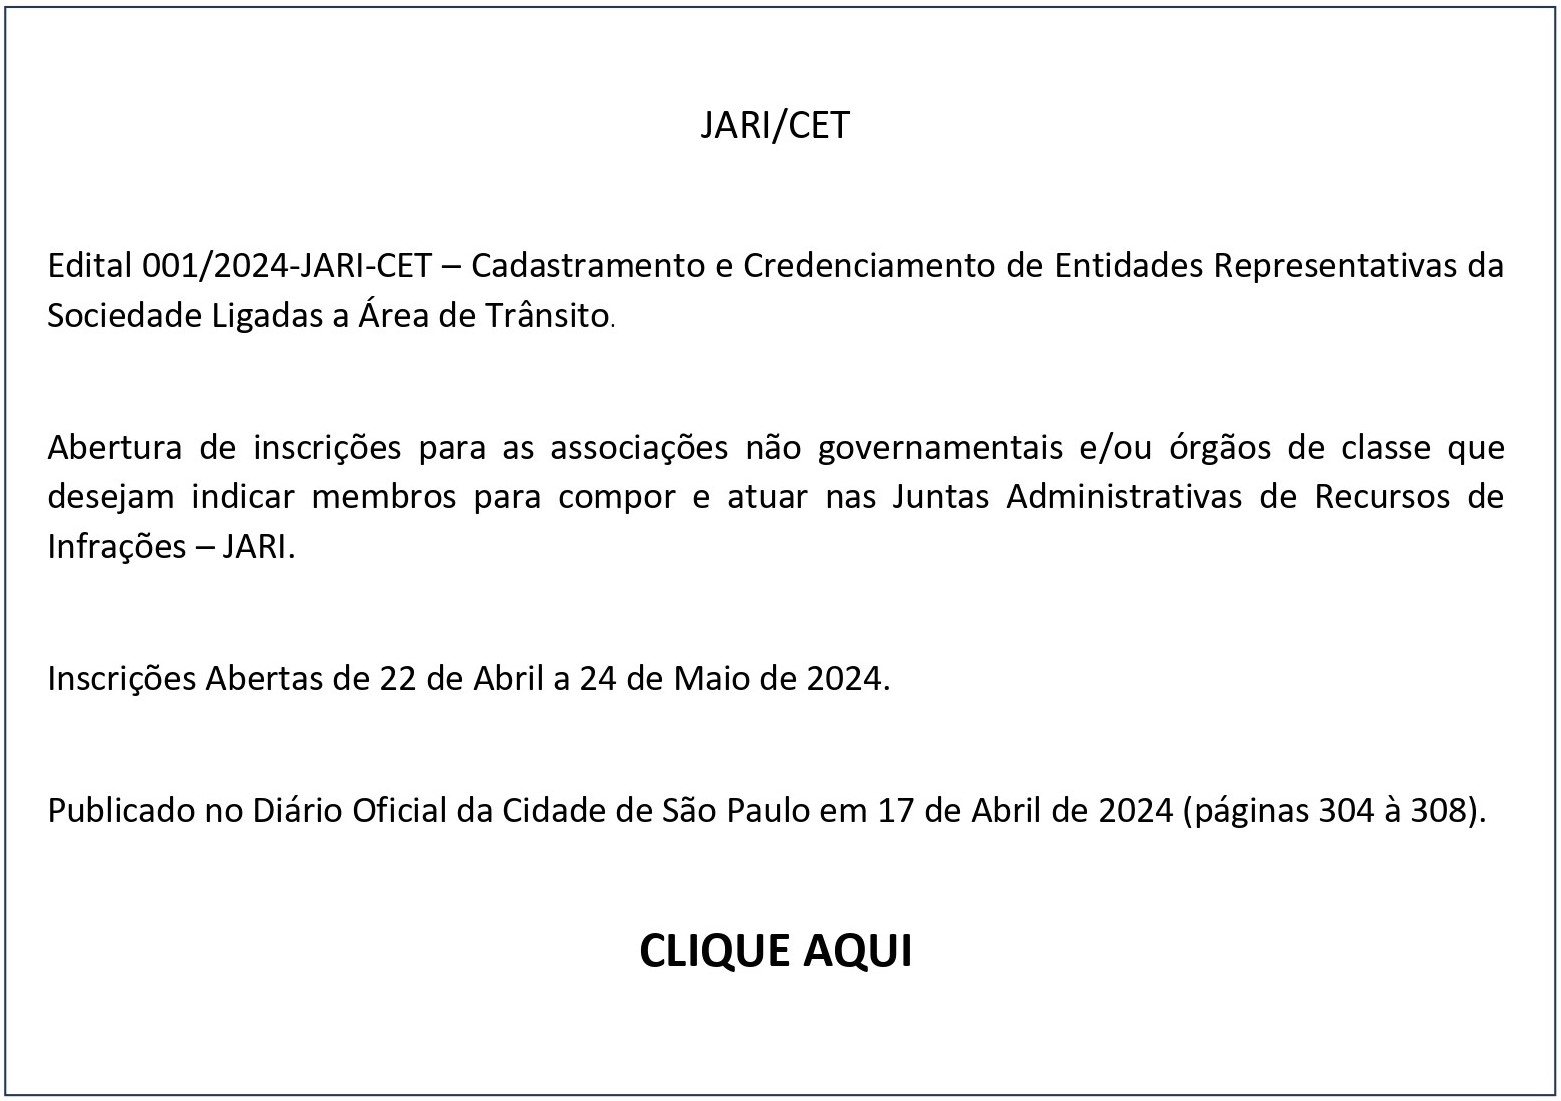 CLIQUE AQUI - Jari/CET Edital 001/2024-JARI-CET – Cadastramento e Credenciamento de Entidades Representativas da Sociedade Ligadas a Área de Trânsito. 